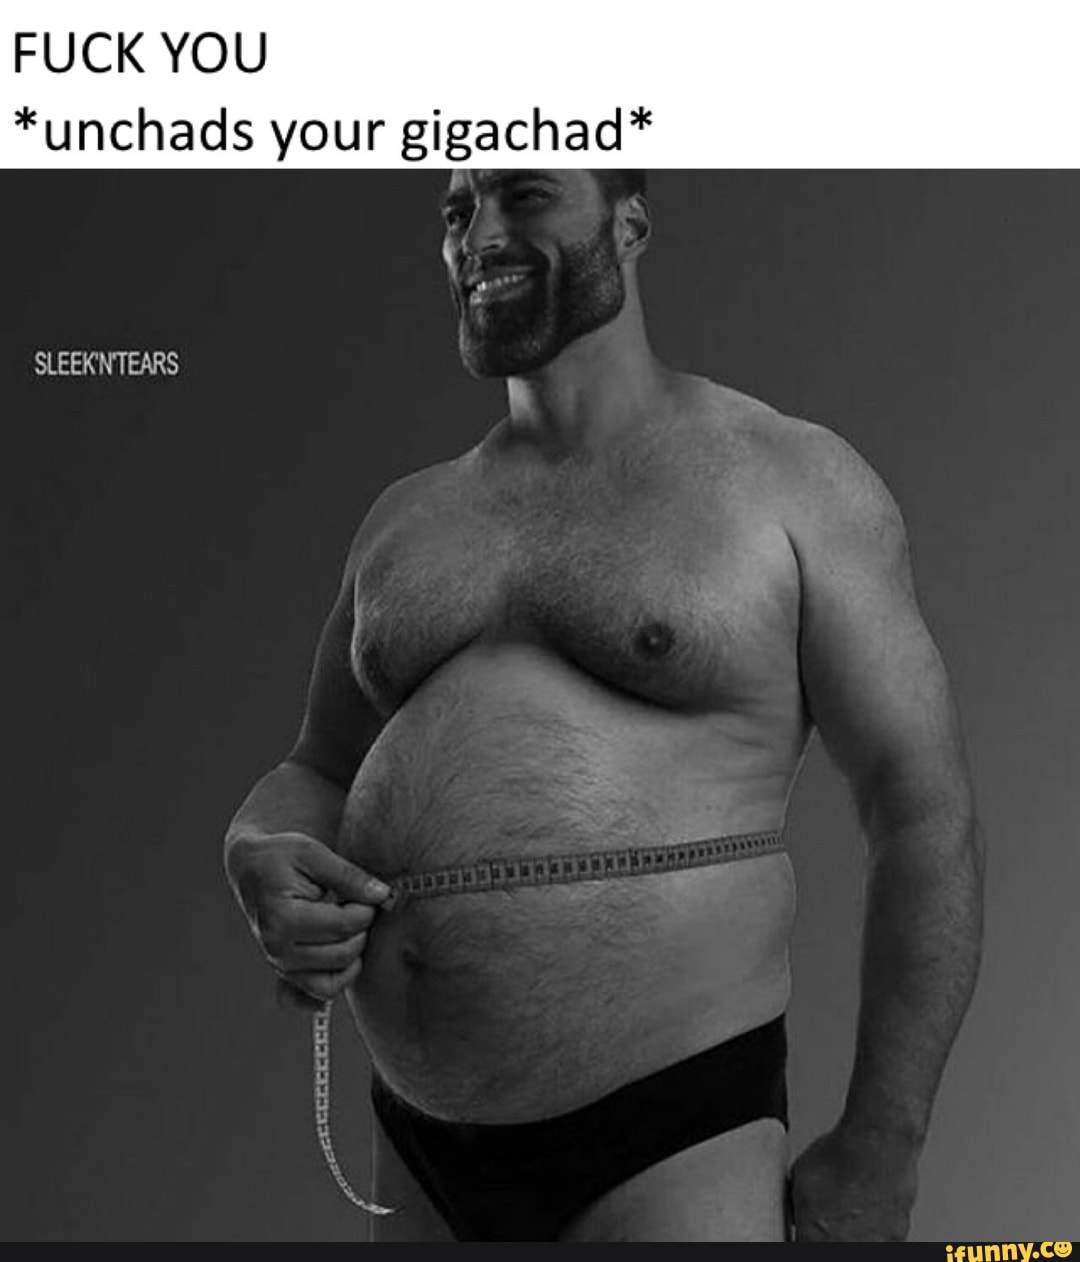 Gigachad Meme But It's Roblox, GigaChad